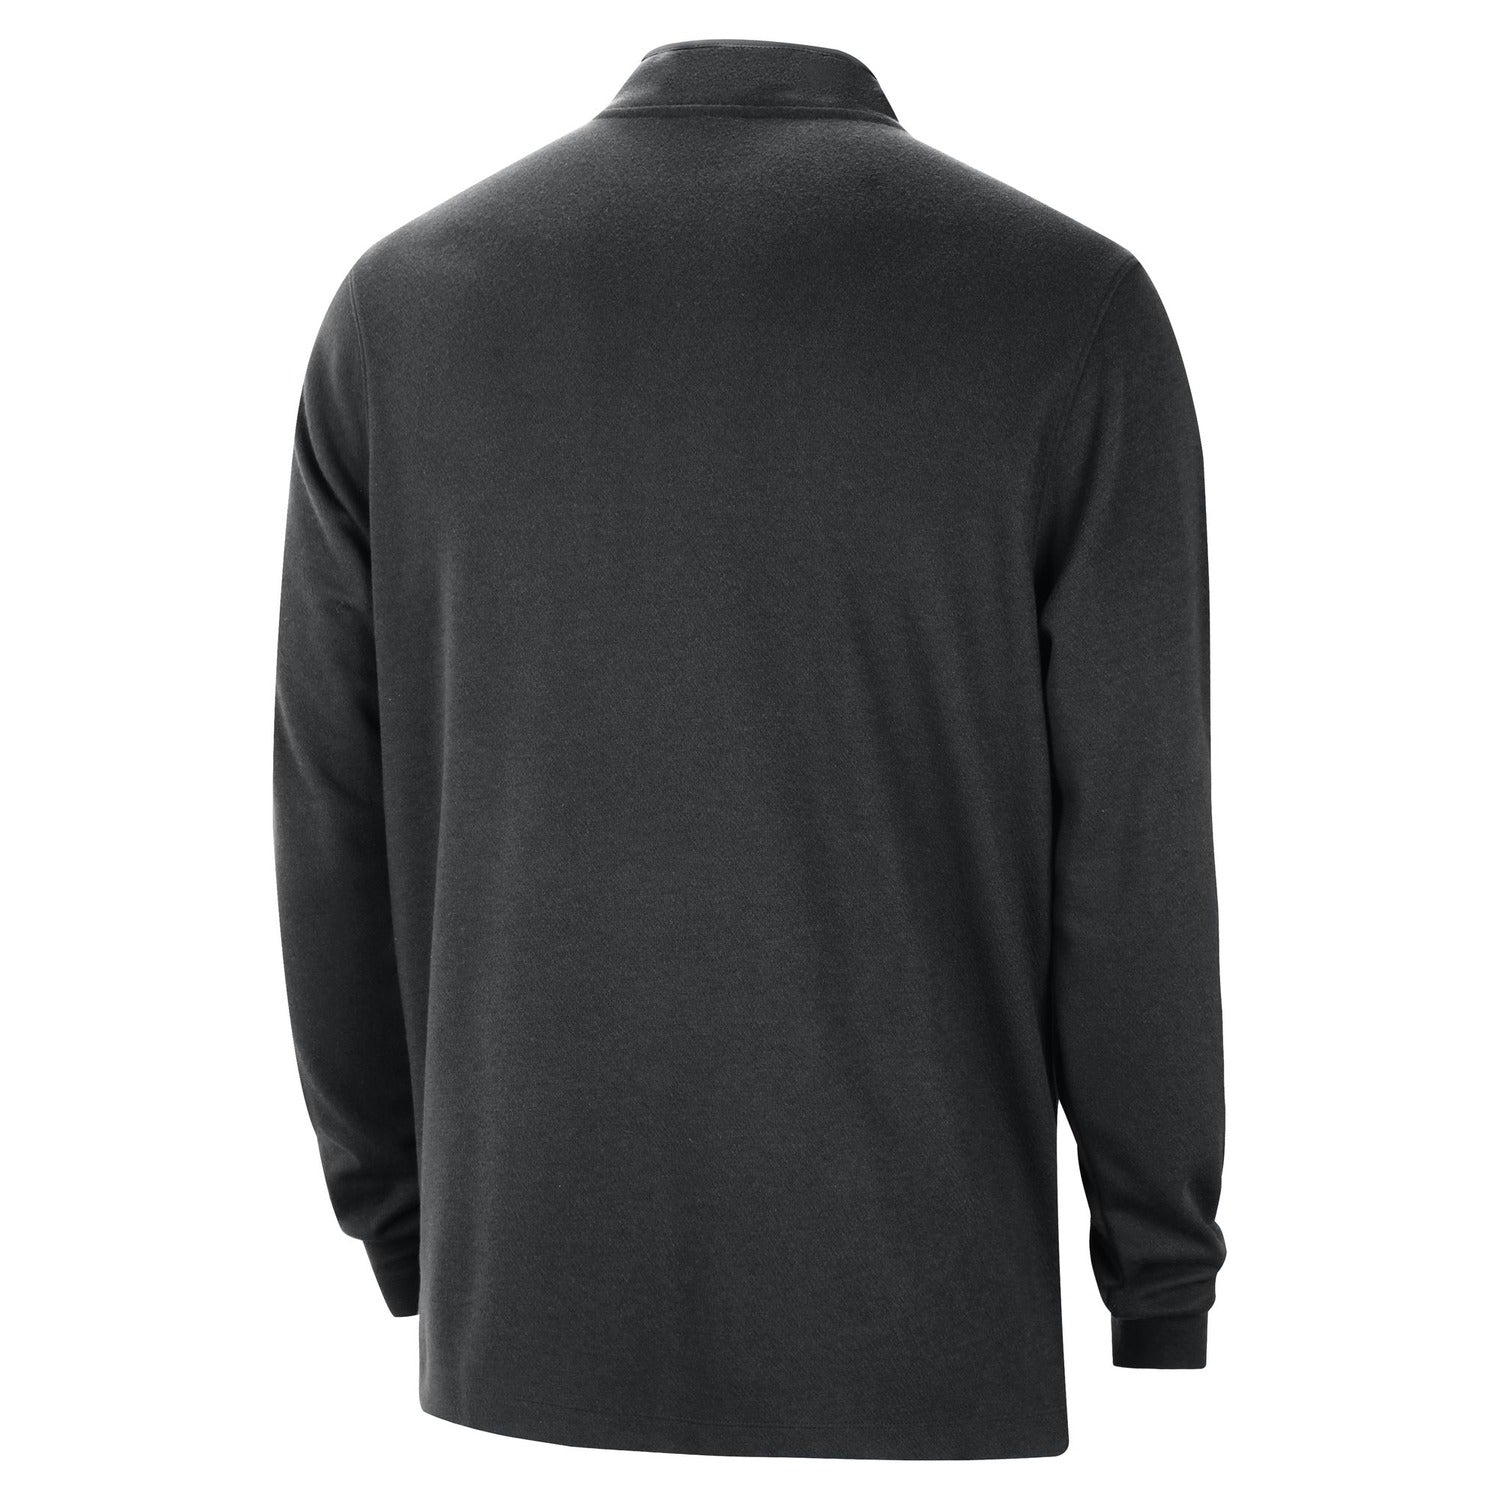 Nike Knicks Dri-fit Black Half Zip Pullover - Back View